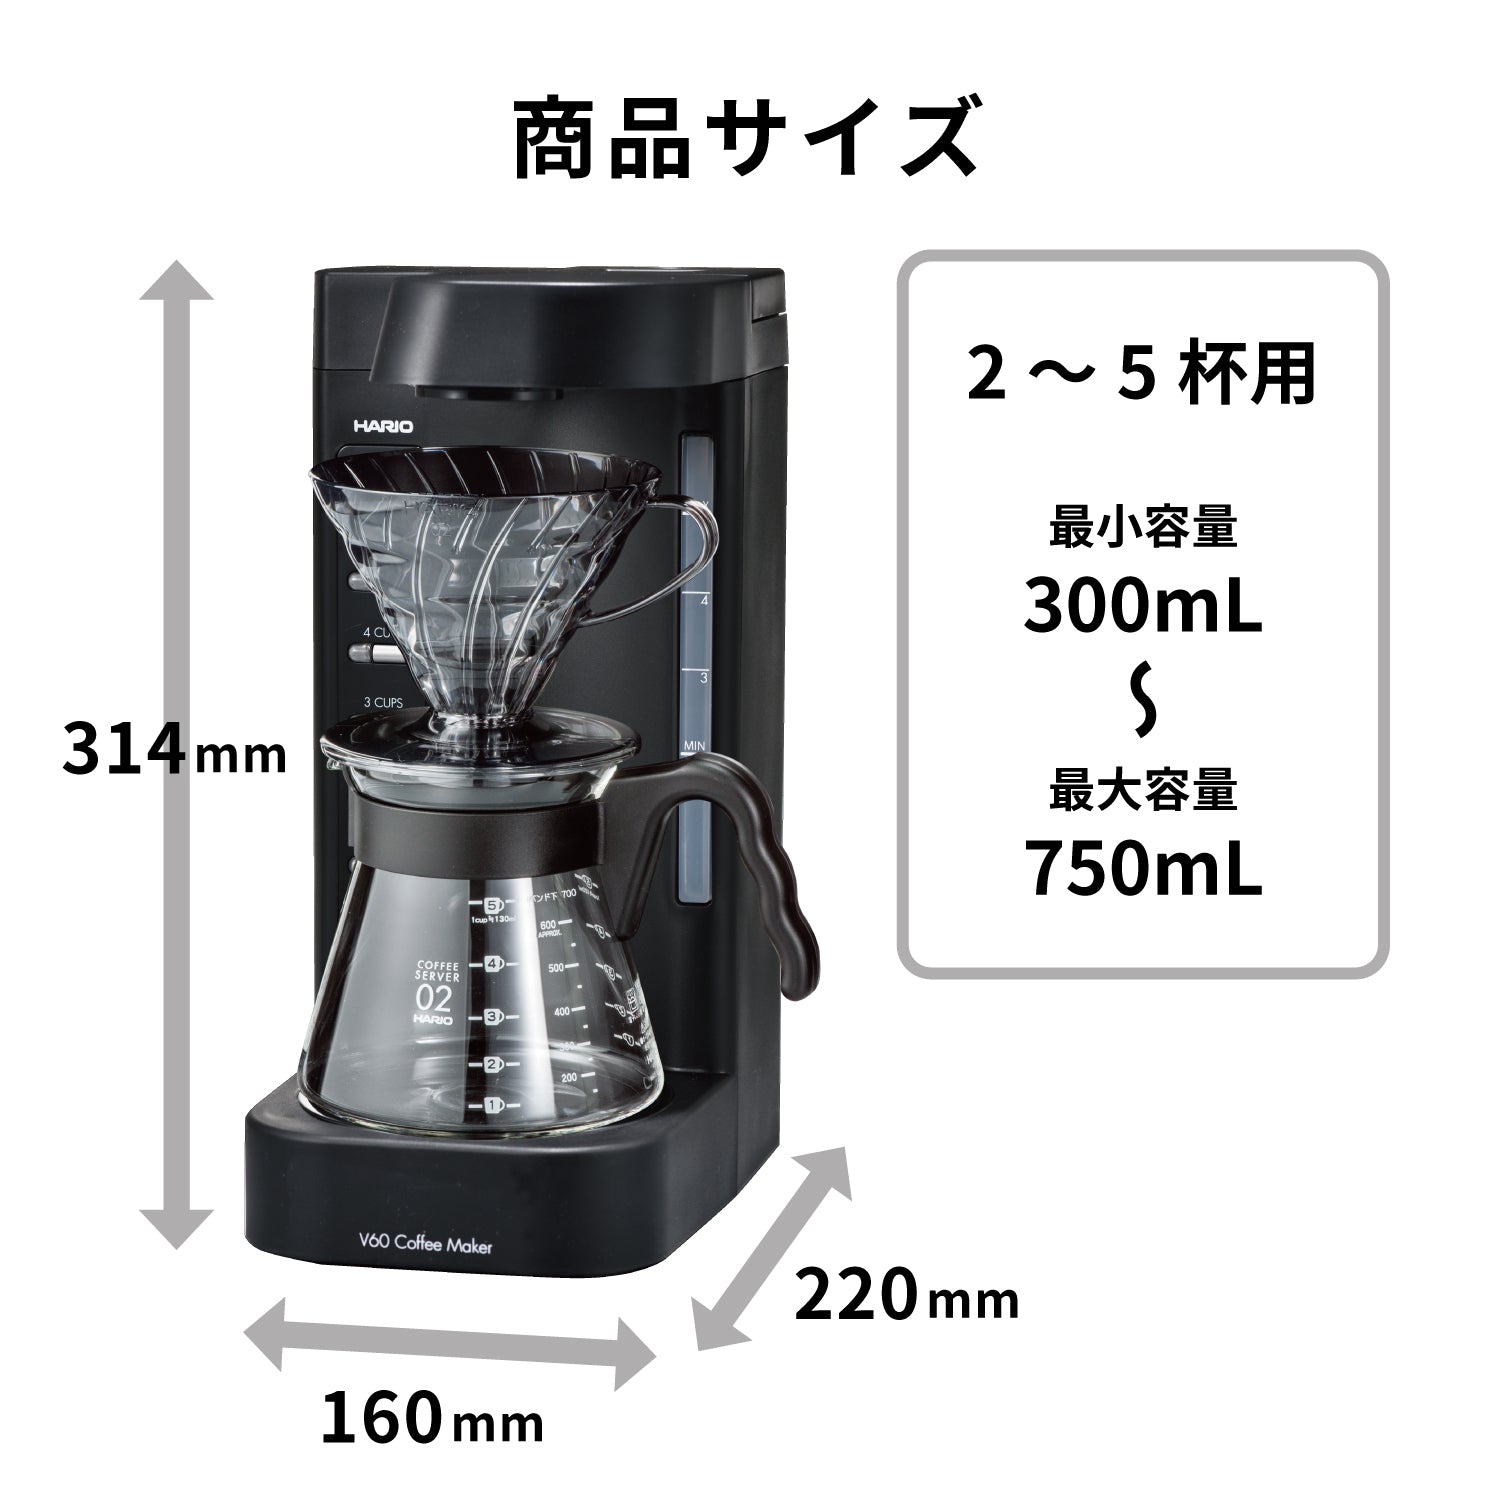 V60珈琲王2 コーヒーメーカー